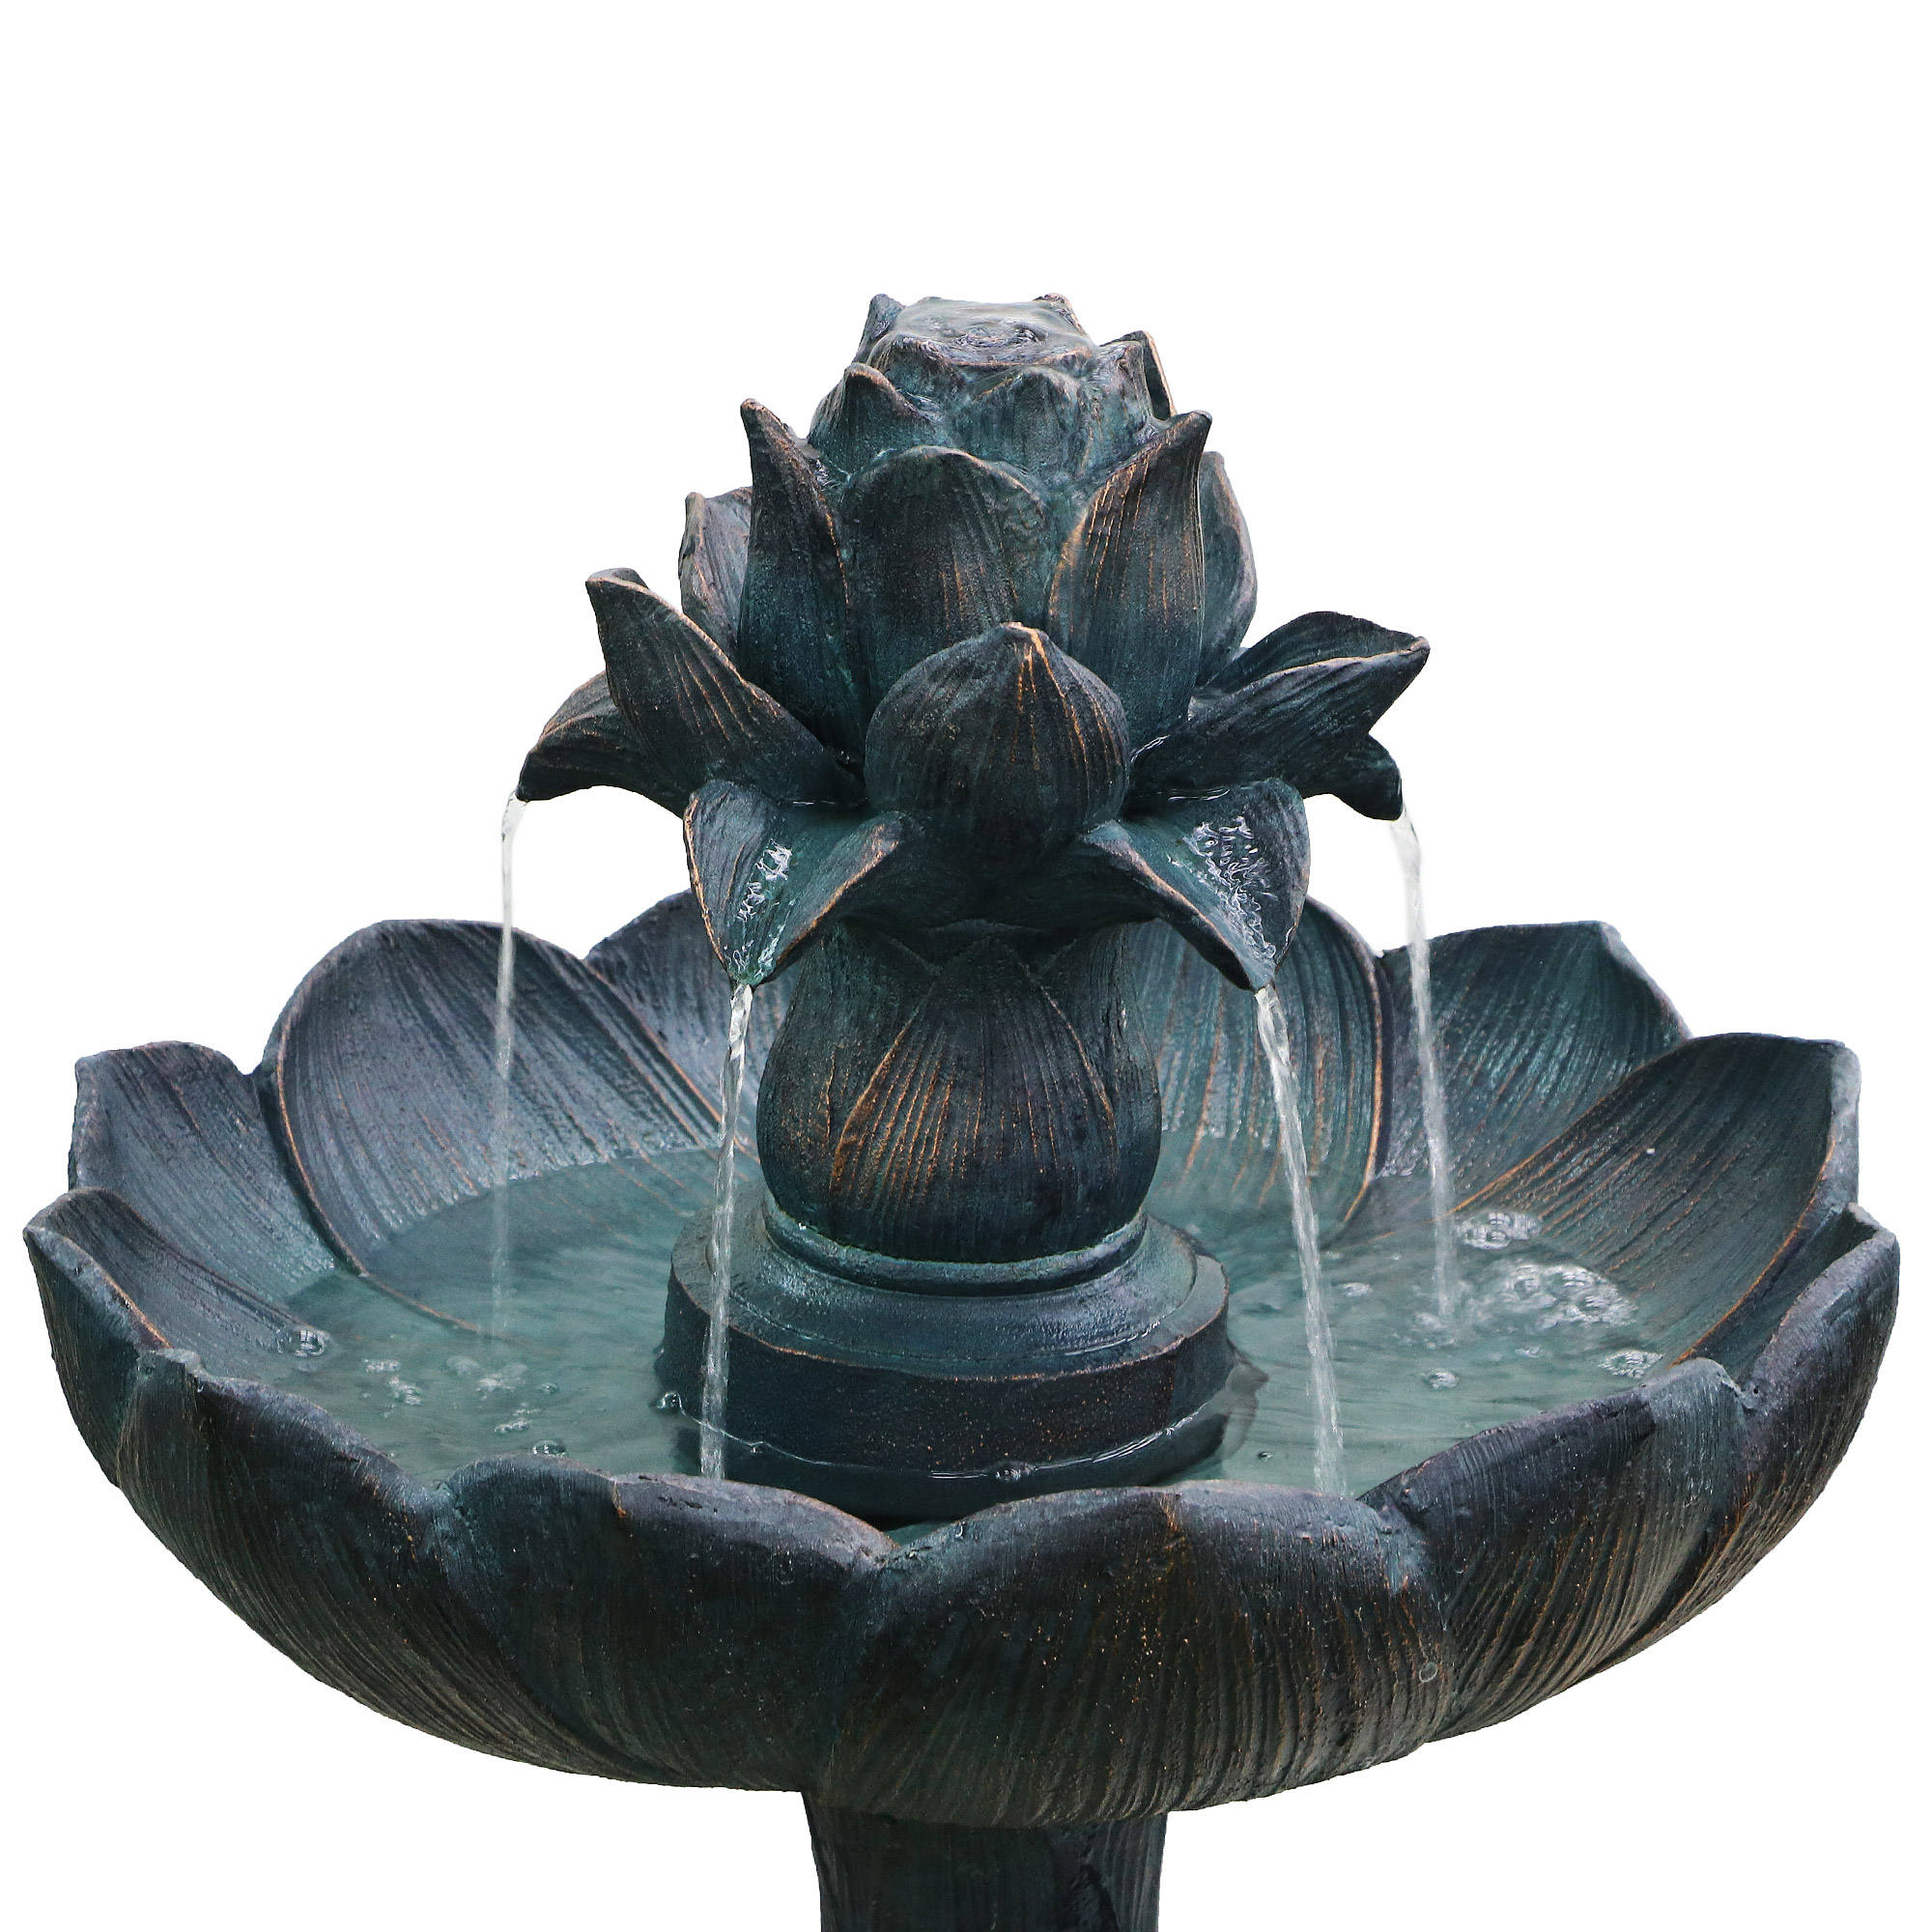 Фонтан Haomei Fountain лотос серый 52х52хh90, размер 52х52х90 см - фото 2